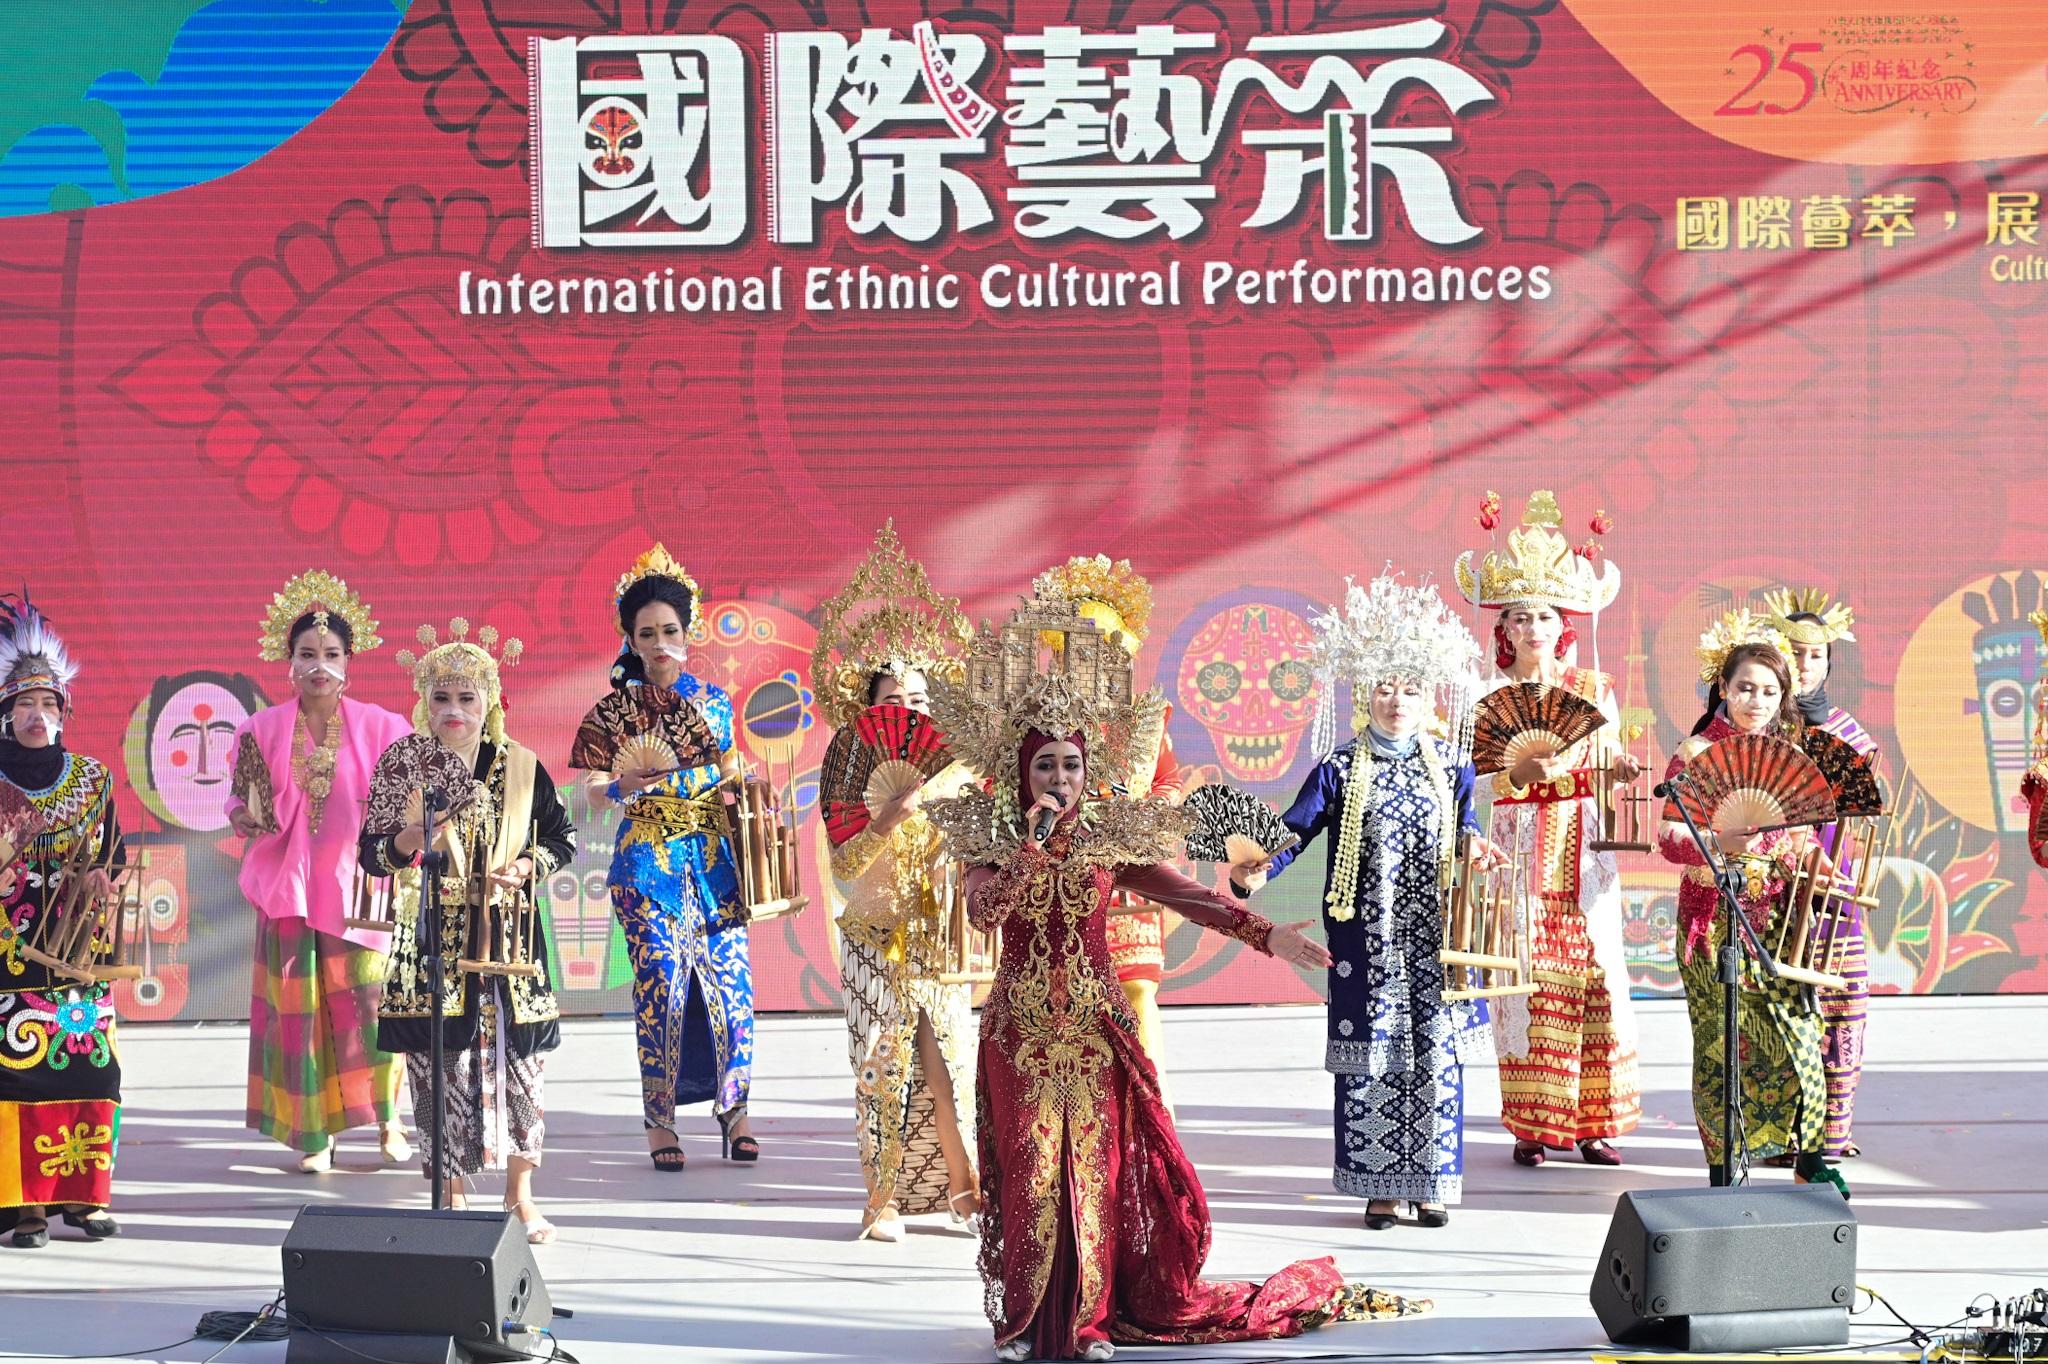 康乐及文化事务署今日（十一月十三日）下午在香港文化中心露天广场举行「国际艺采」，透过丰富活动包括传统民族舞台表演、民族面具展示和周边活动摊位，展现不同地域的独特文化和演艺才华。图示印尼民族舞蹈表演。